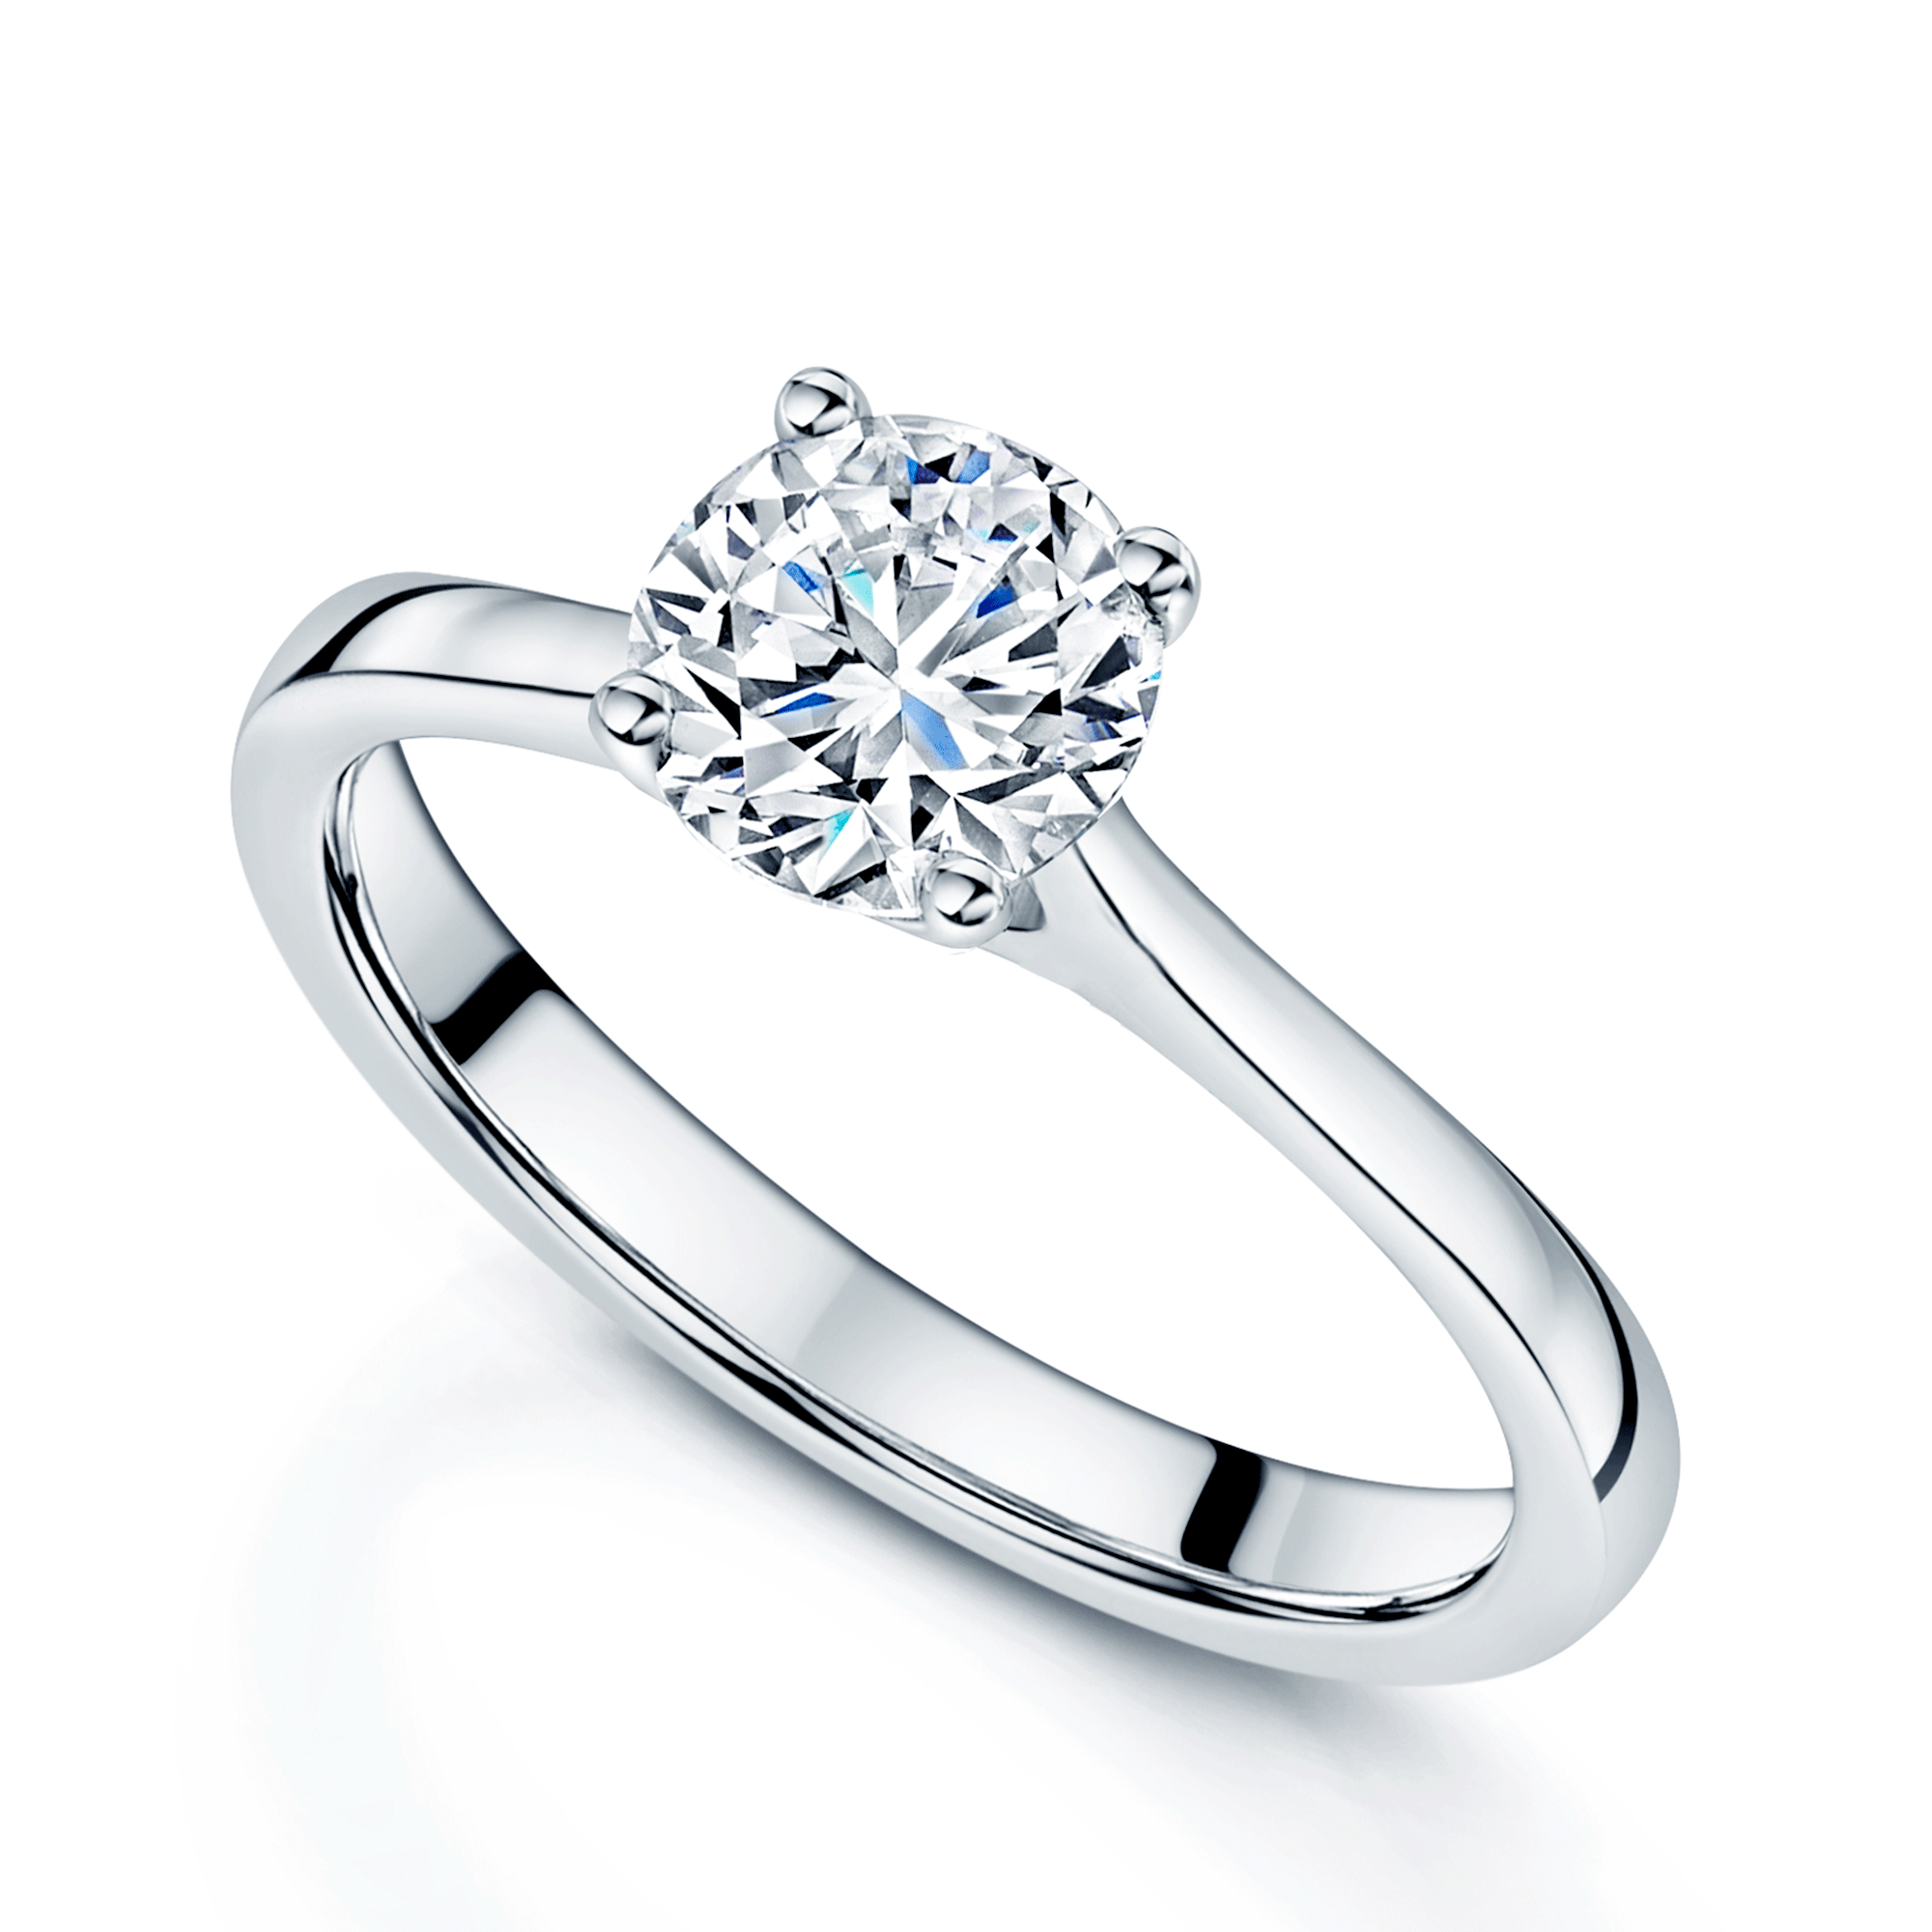 Platinum GIA Certificated 0.71 Carat Round Brilliant Cut Diamond Solitaire Ring